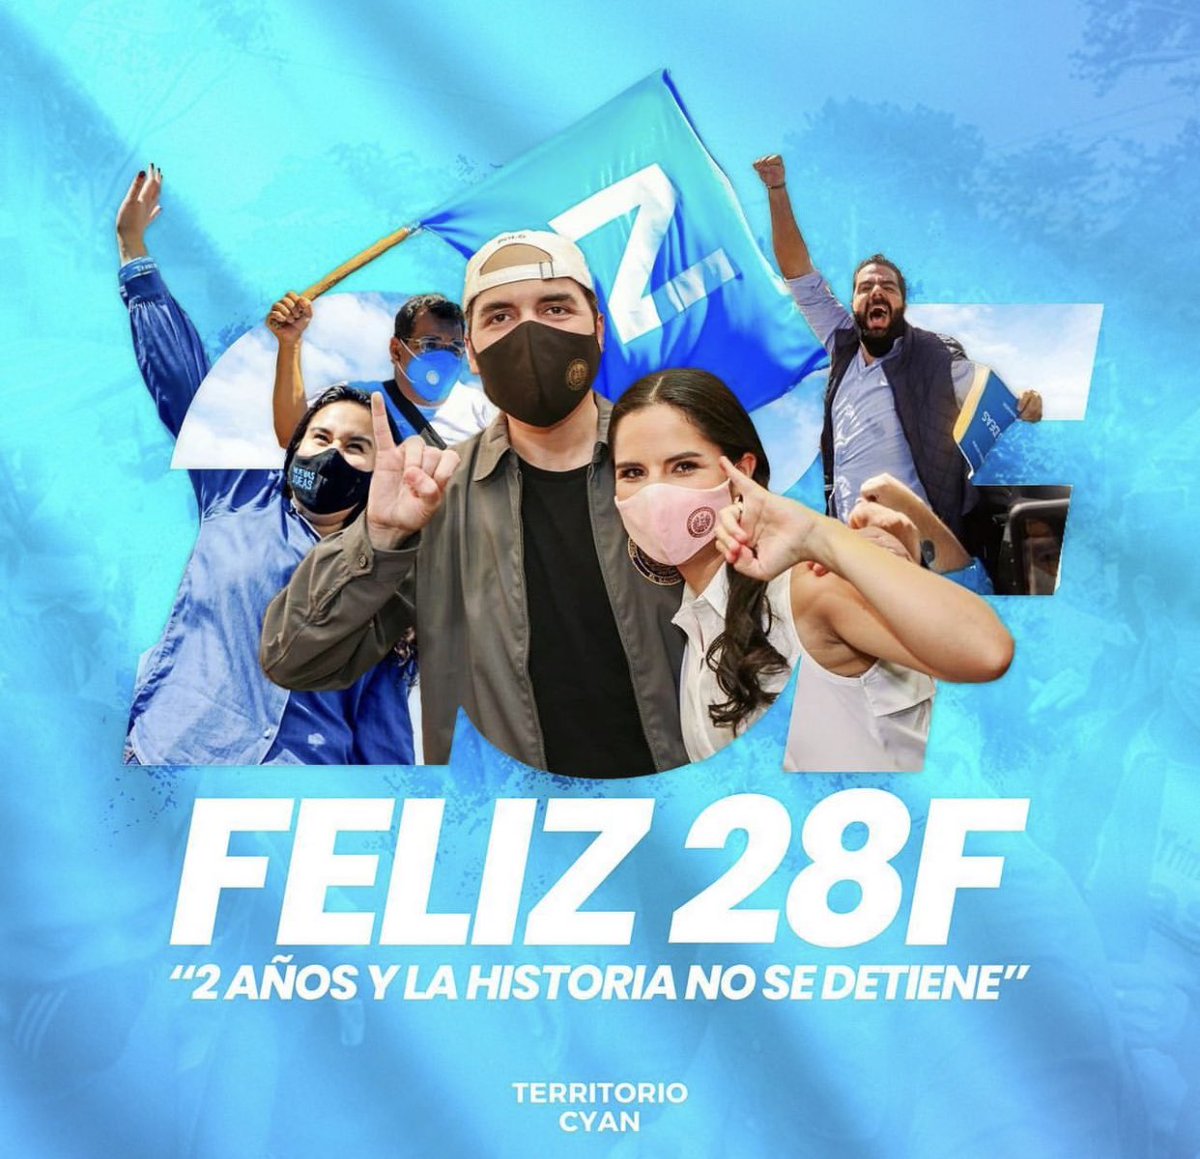 Se sigue escribiendo la Historia!!
#28F Y la Celebration sigue y vamos por más!!

Hace 2 años el pueblo Salvadoreños,disidimos darle la Gobernabilidad a Nuestro Presidente @nayibbukele 🇸🇻

#JuntosSomosImparables
#DiasporaSVPresente

@XZablah 
@BancadaCyan